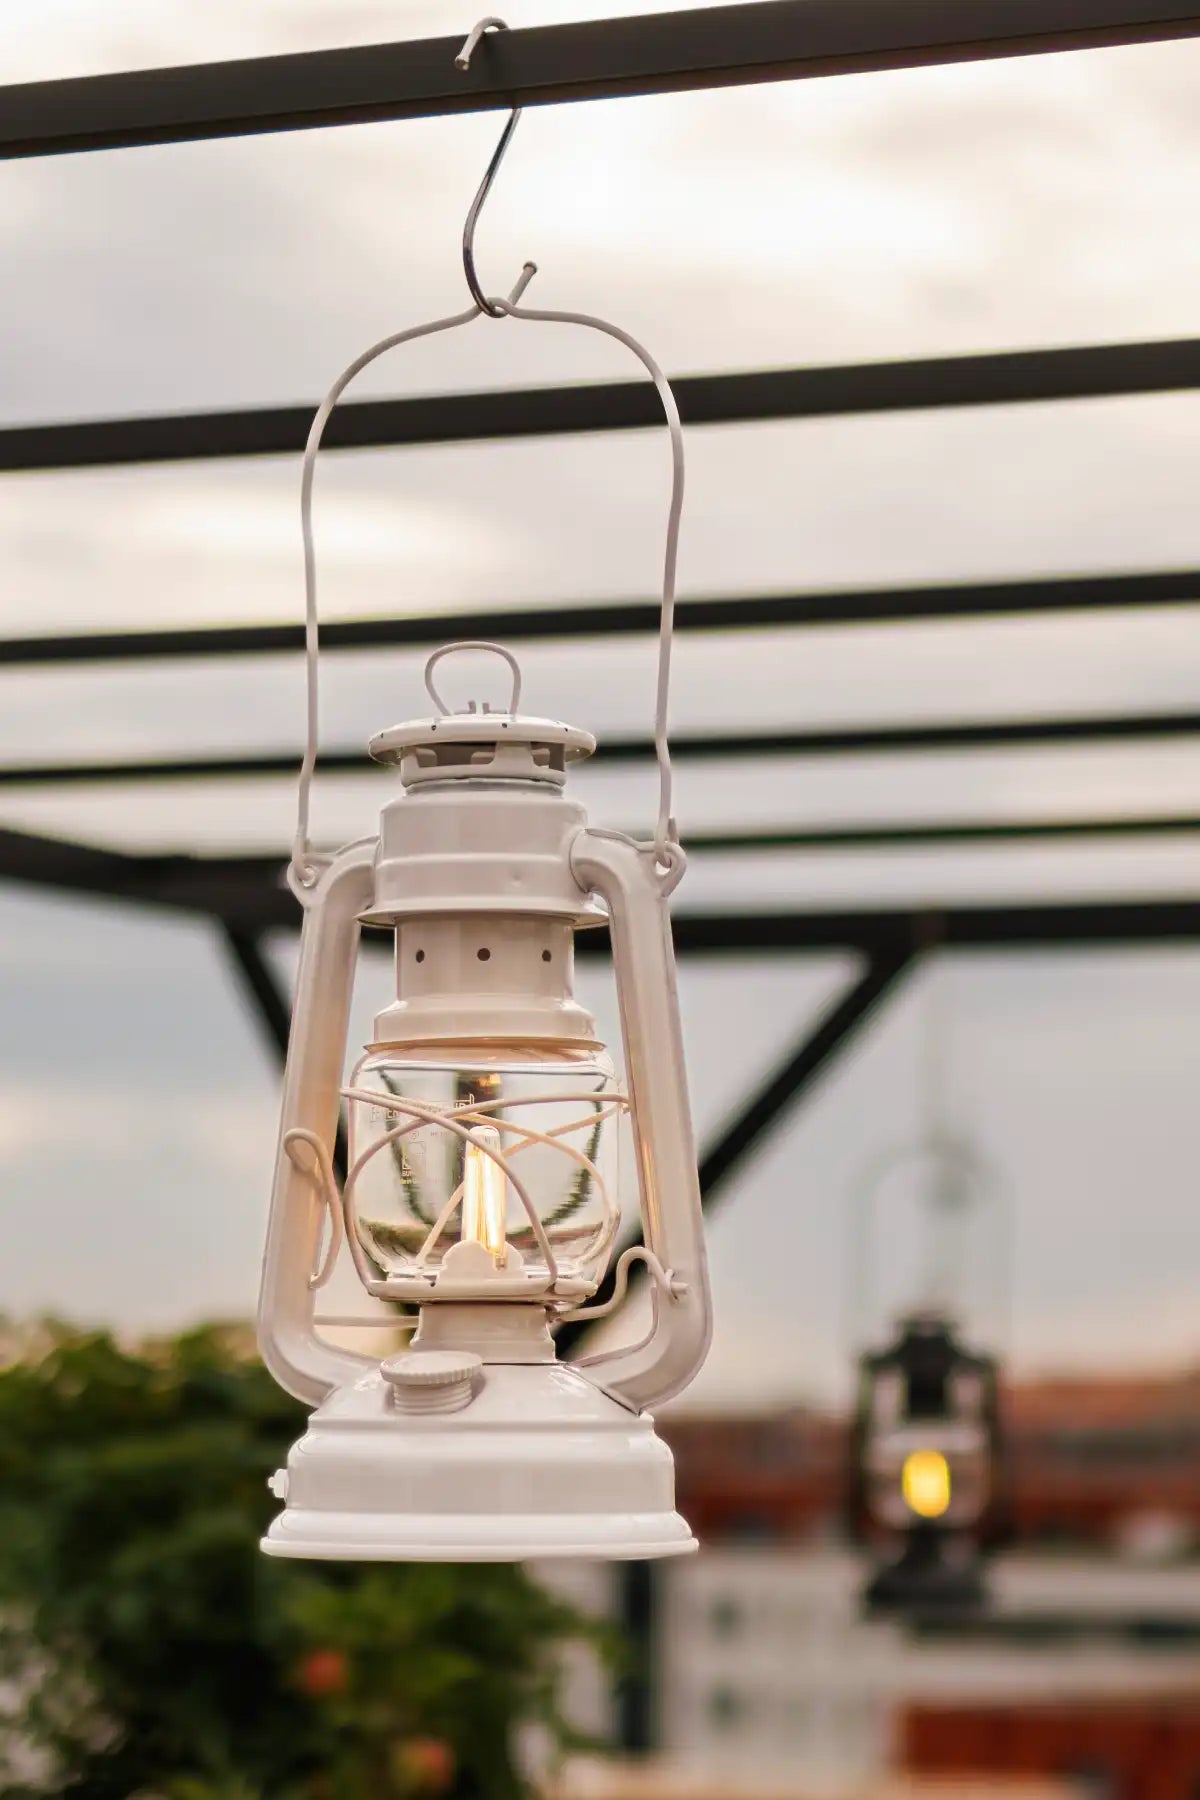 LTDSOAR Lampe Frontale Rechargeable, 2 Brillant 6 Modes d